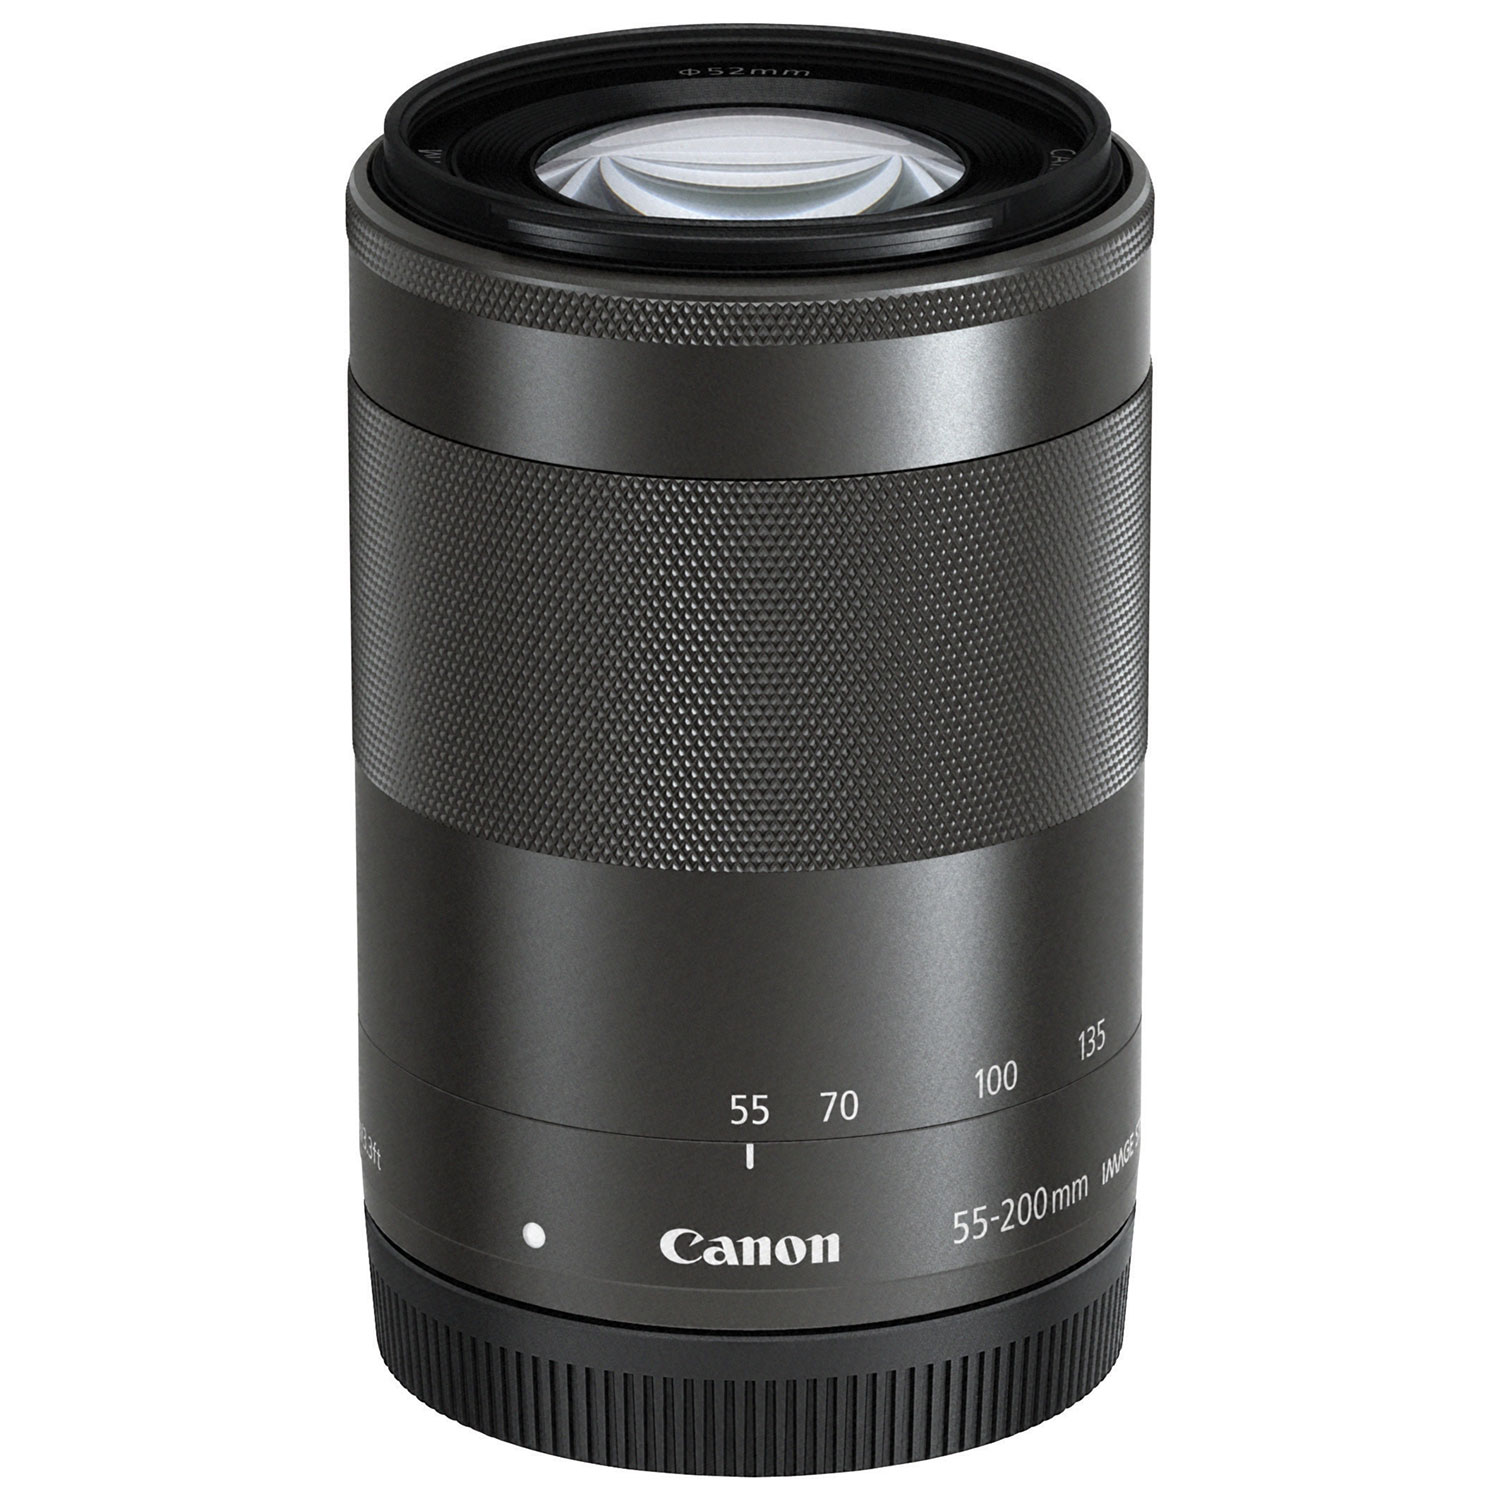 Canon EF-M 55-200mm f/4.5-6.3 IS STM Lens (9517B002) - Black